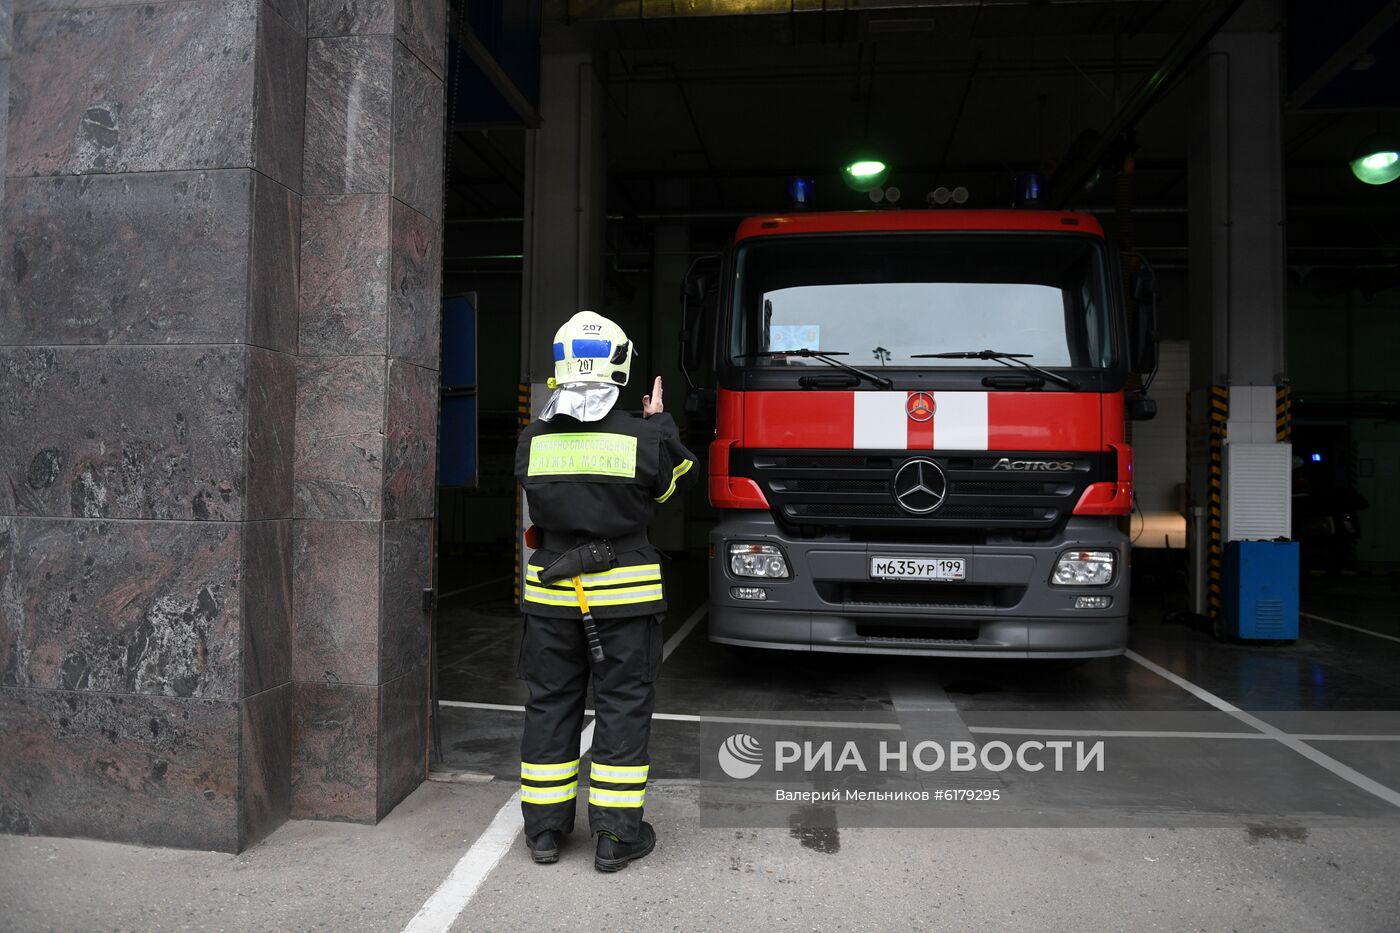 Показательные выступления работников Пожарно-спасательного центра Москвы